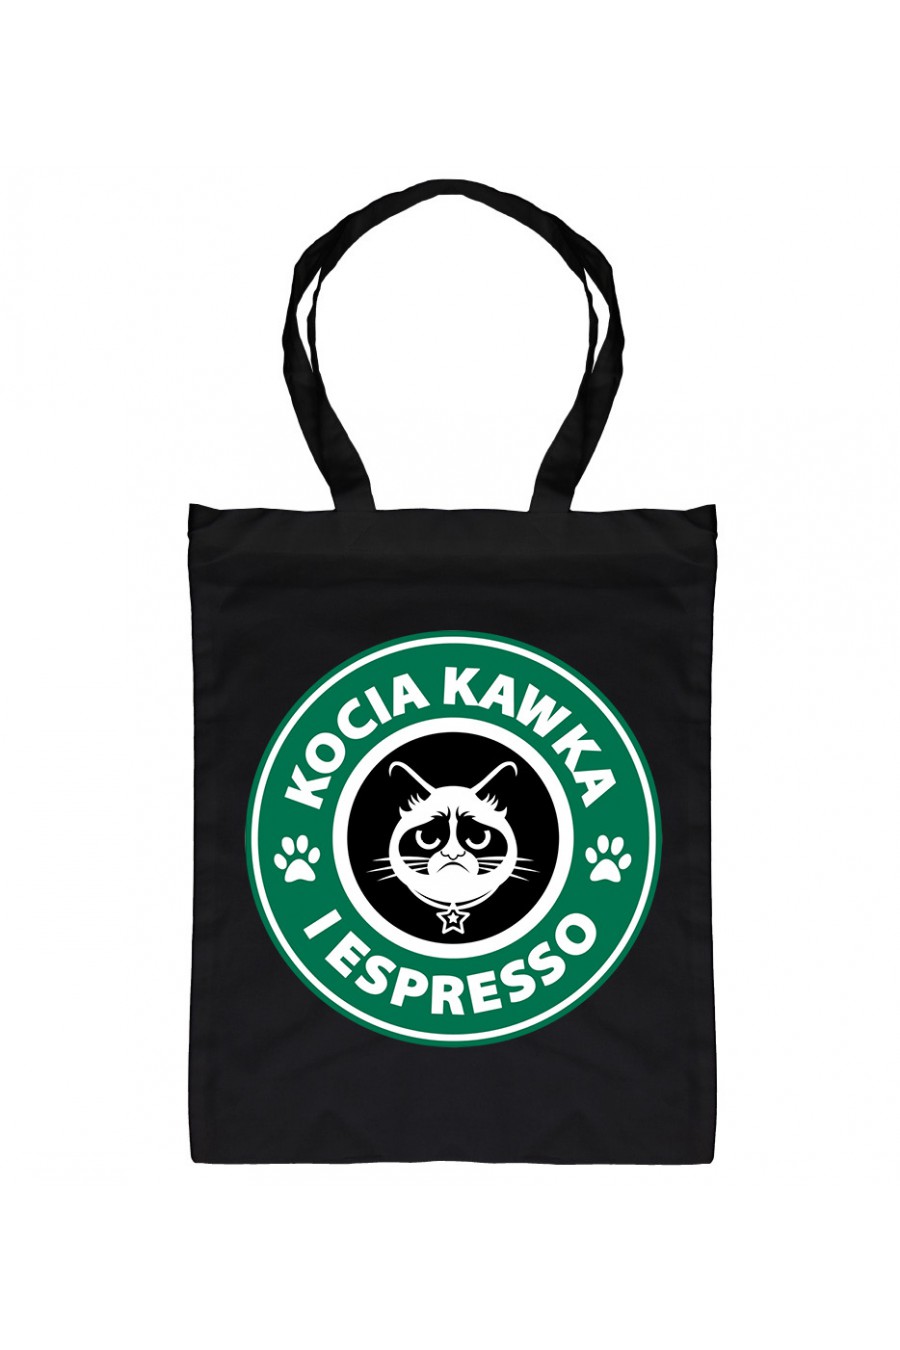 Eko Torba Kocia Kawka I Espresso 2